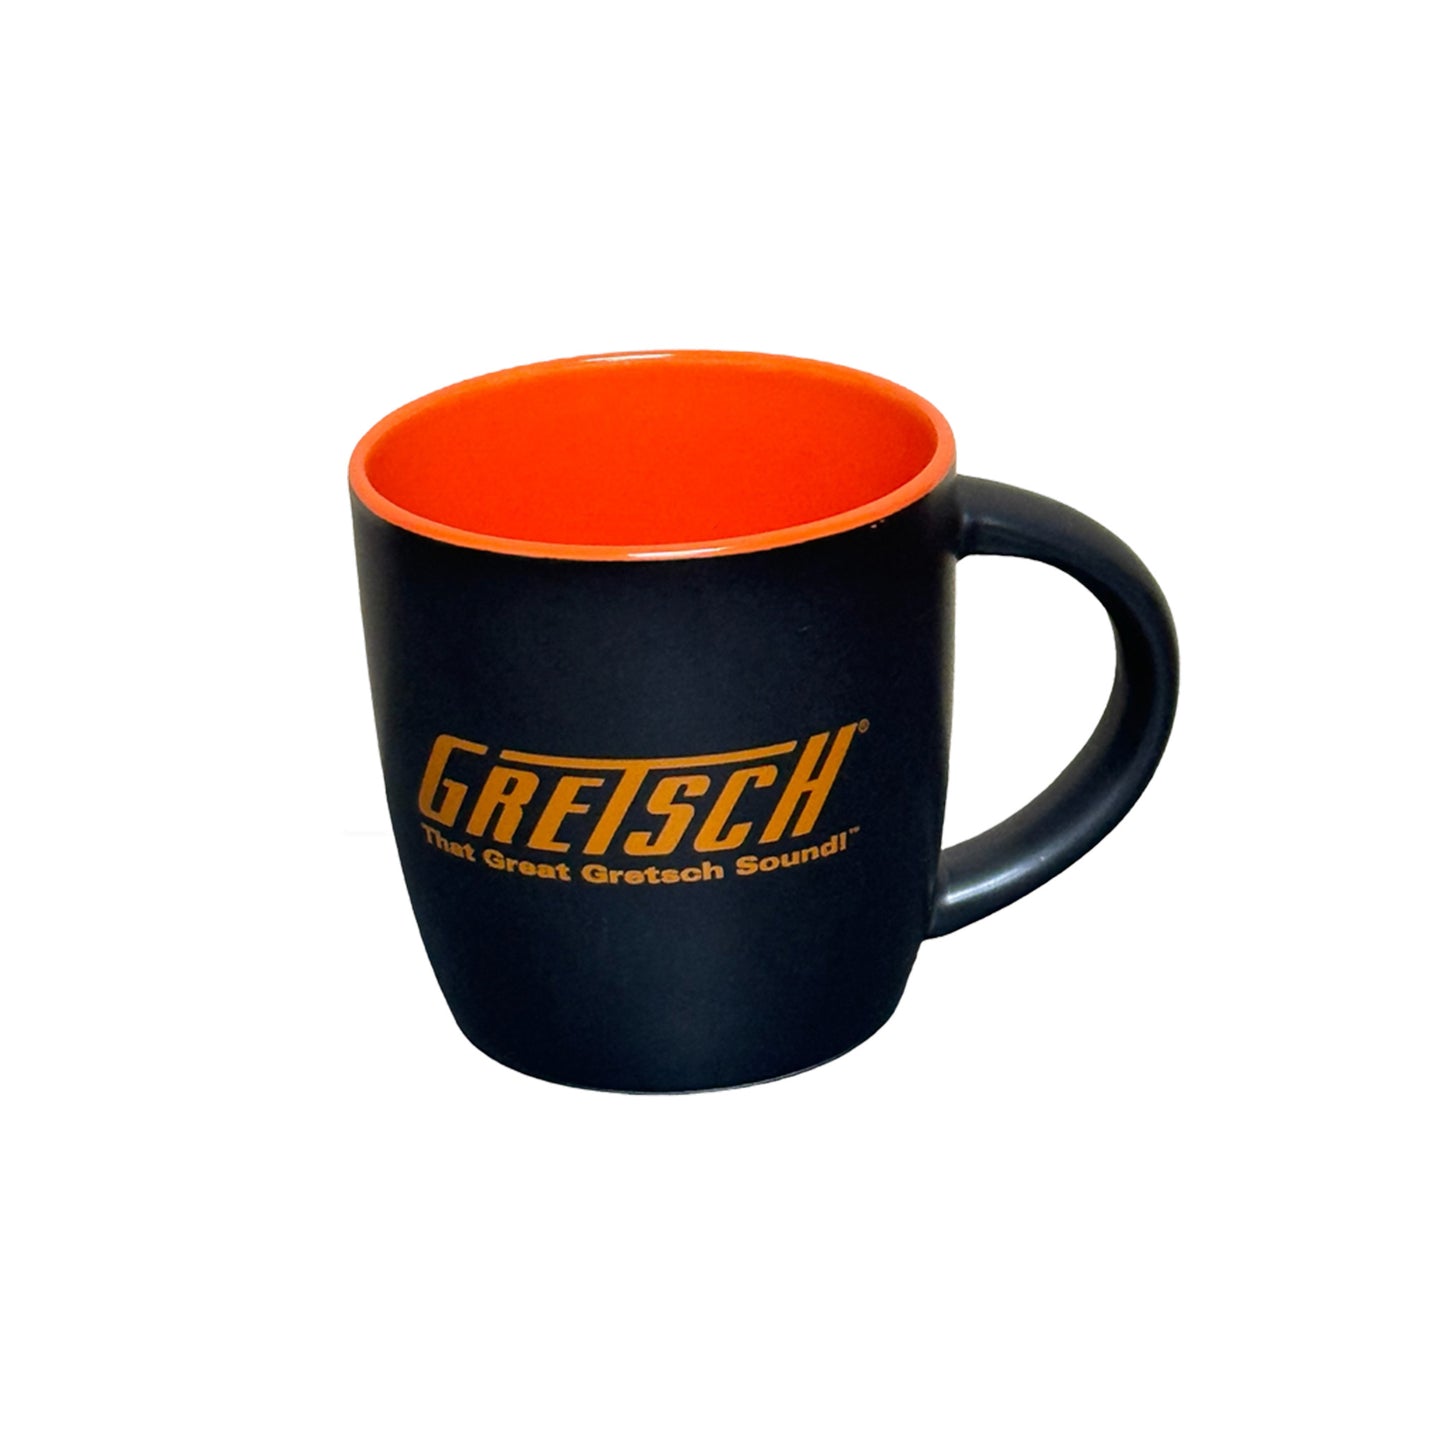 "That Great Gretsch Sound" 12oz Coffee Mug